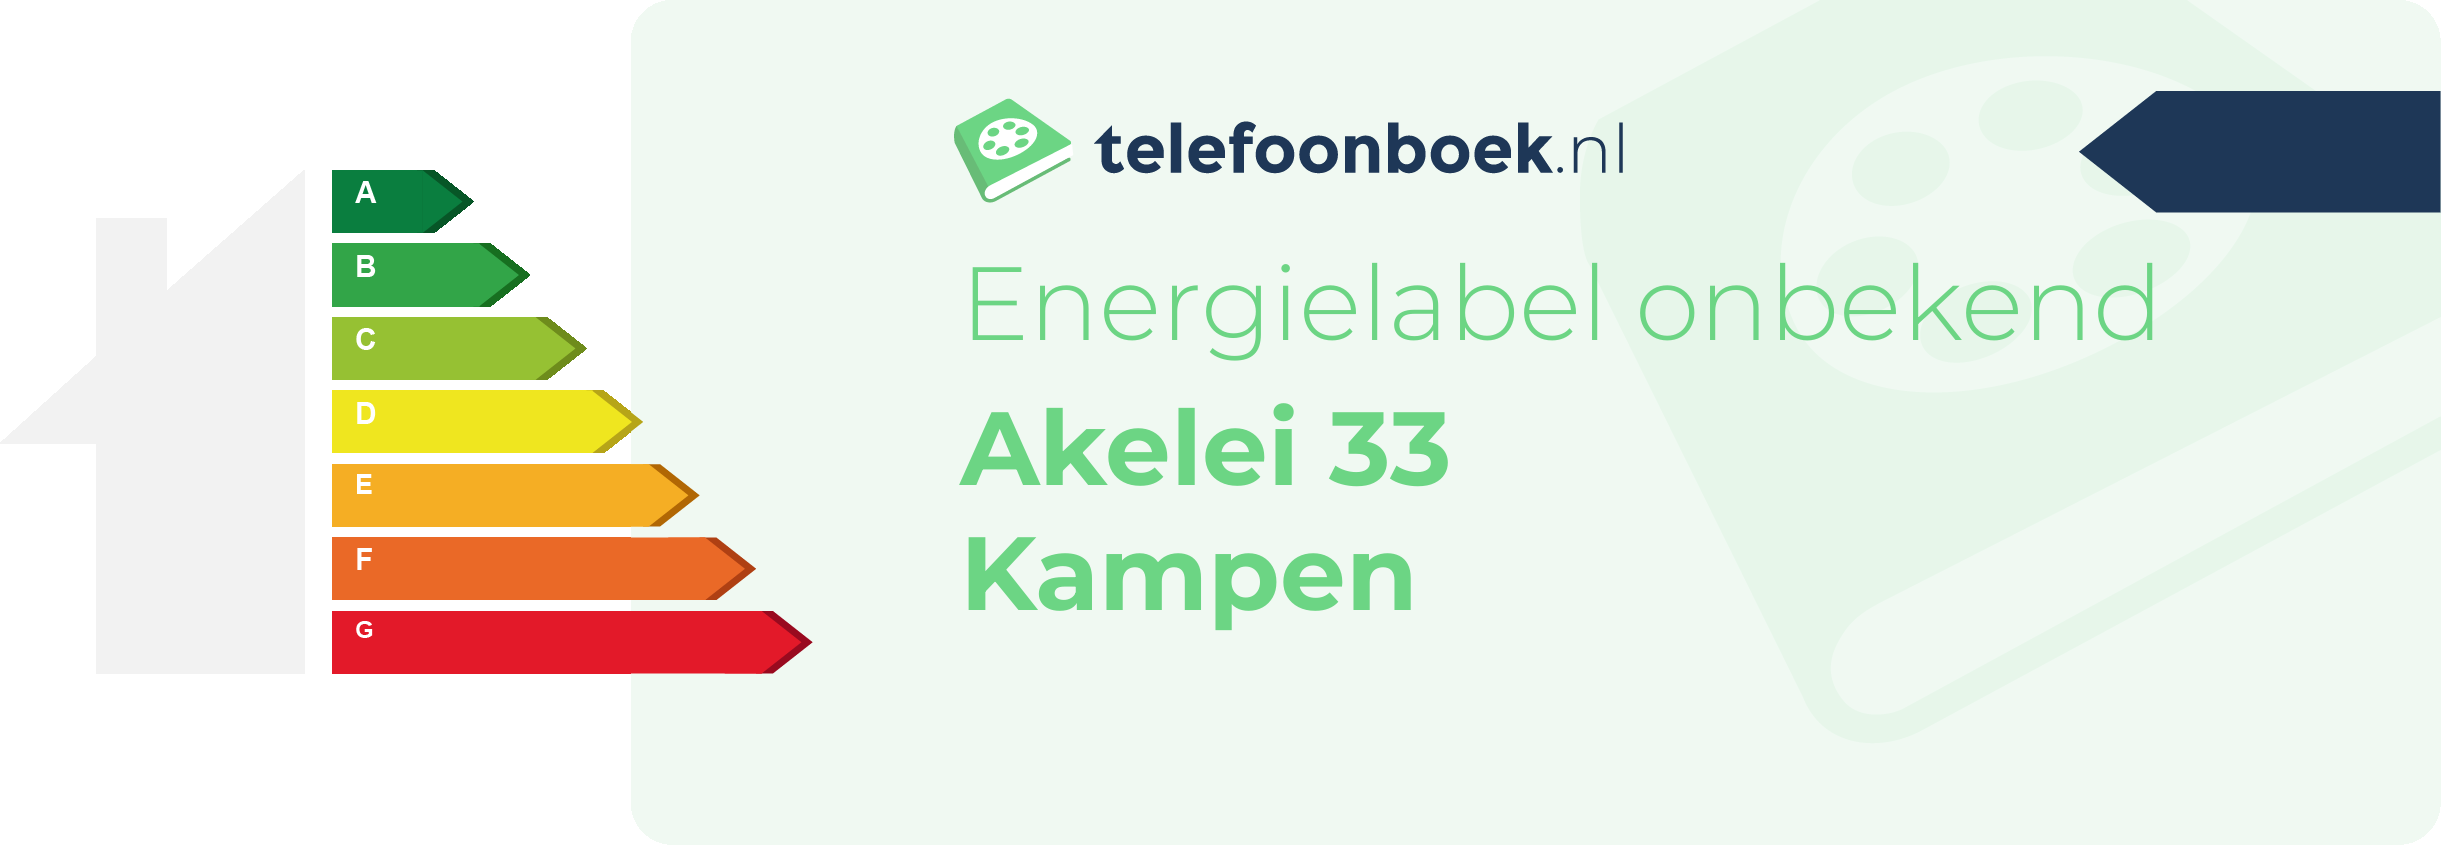 Energielabel Akelei 33 Kampen